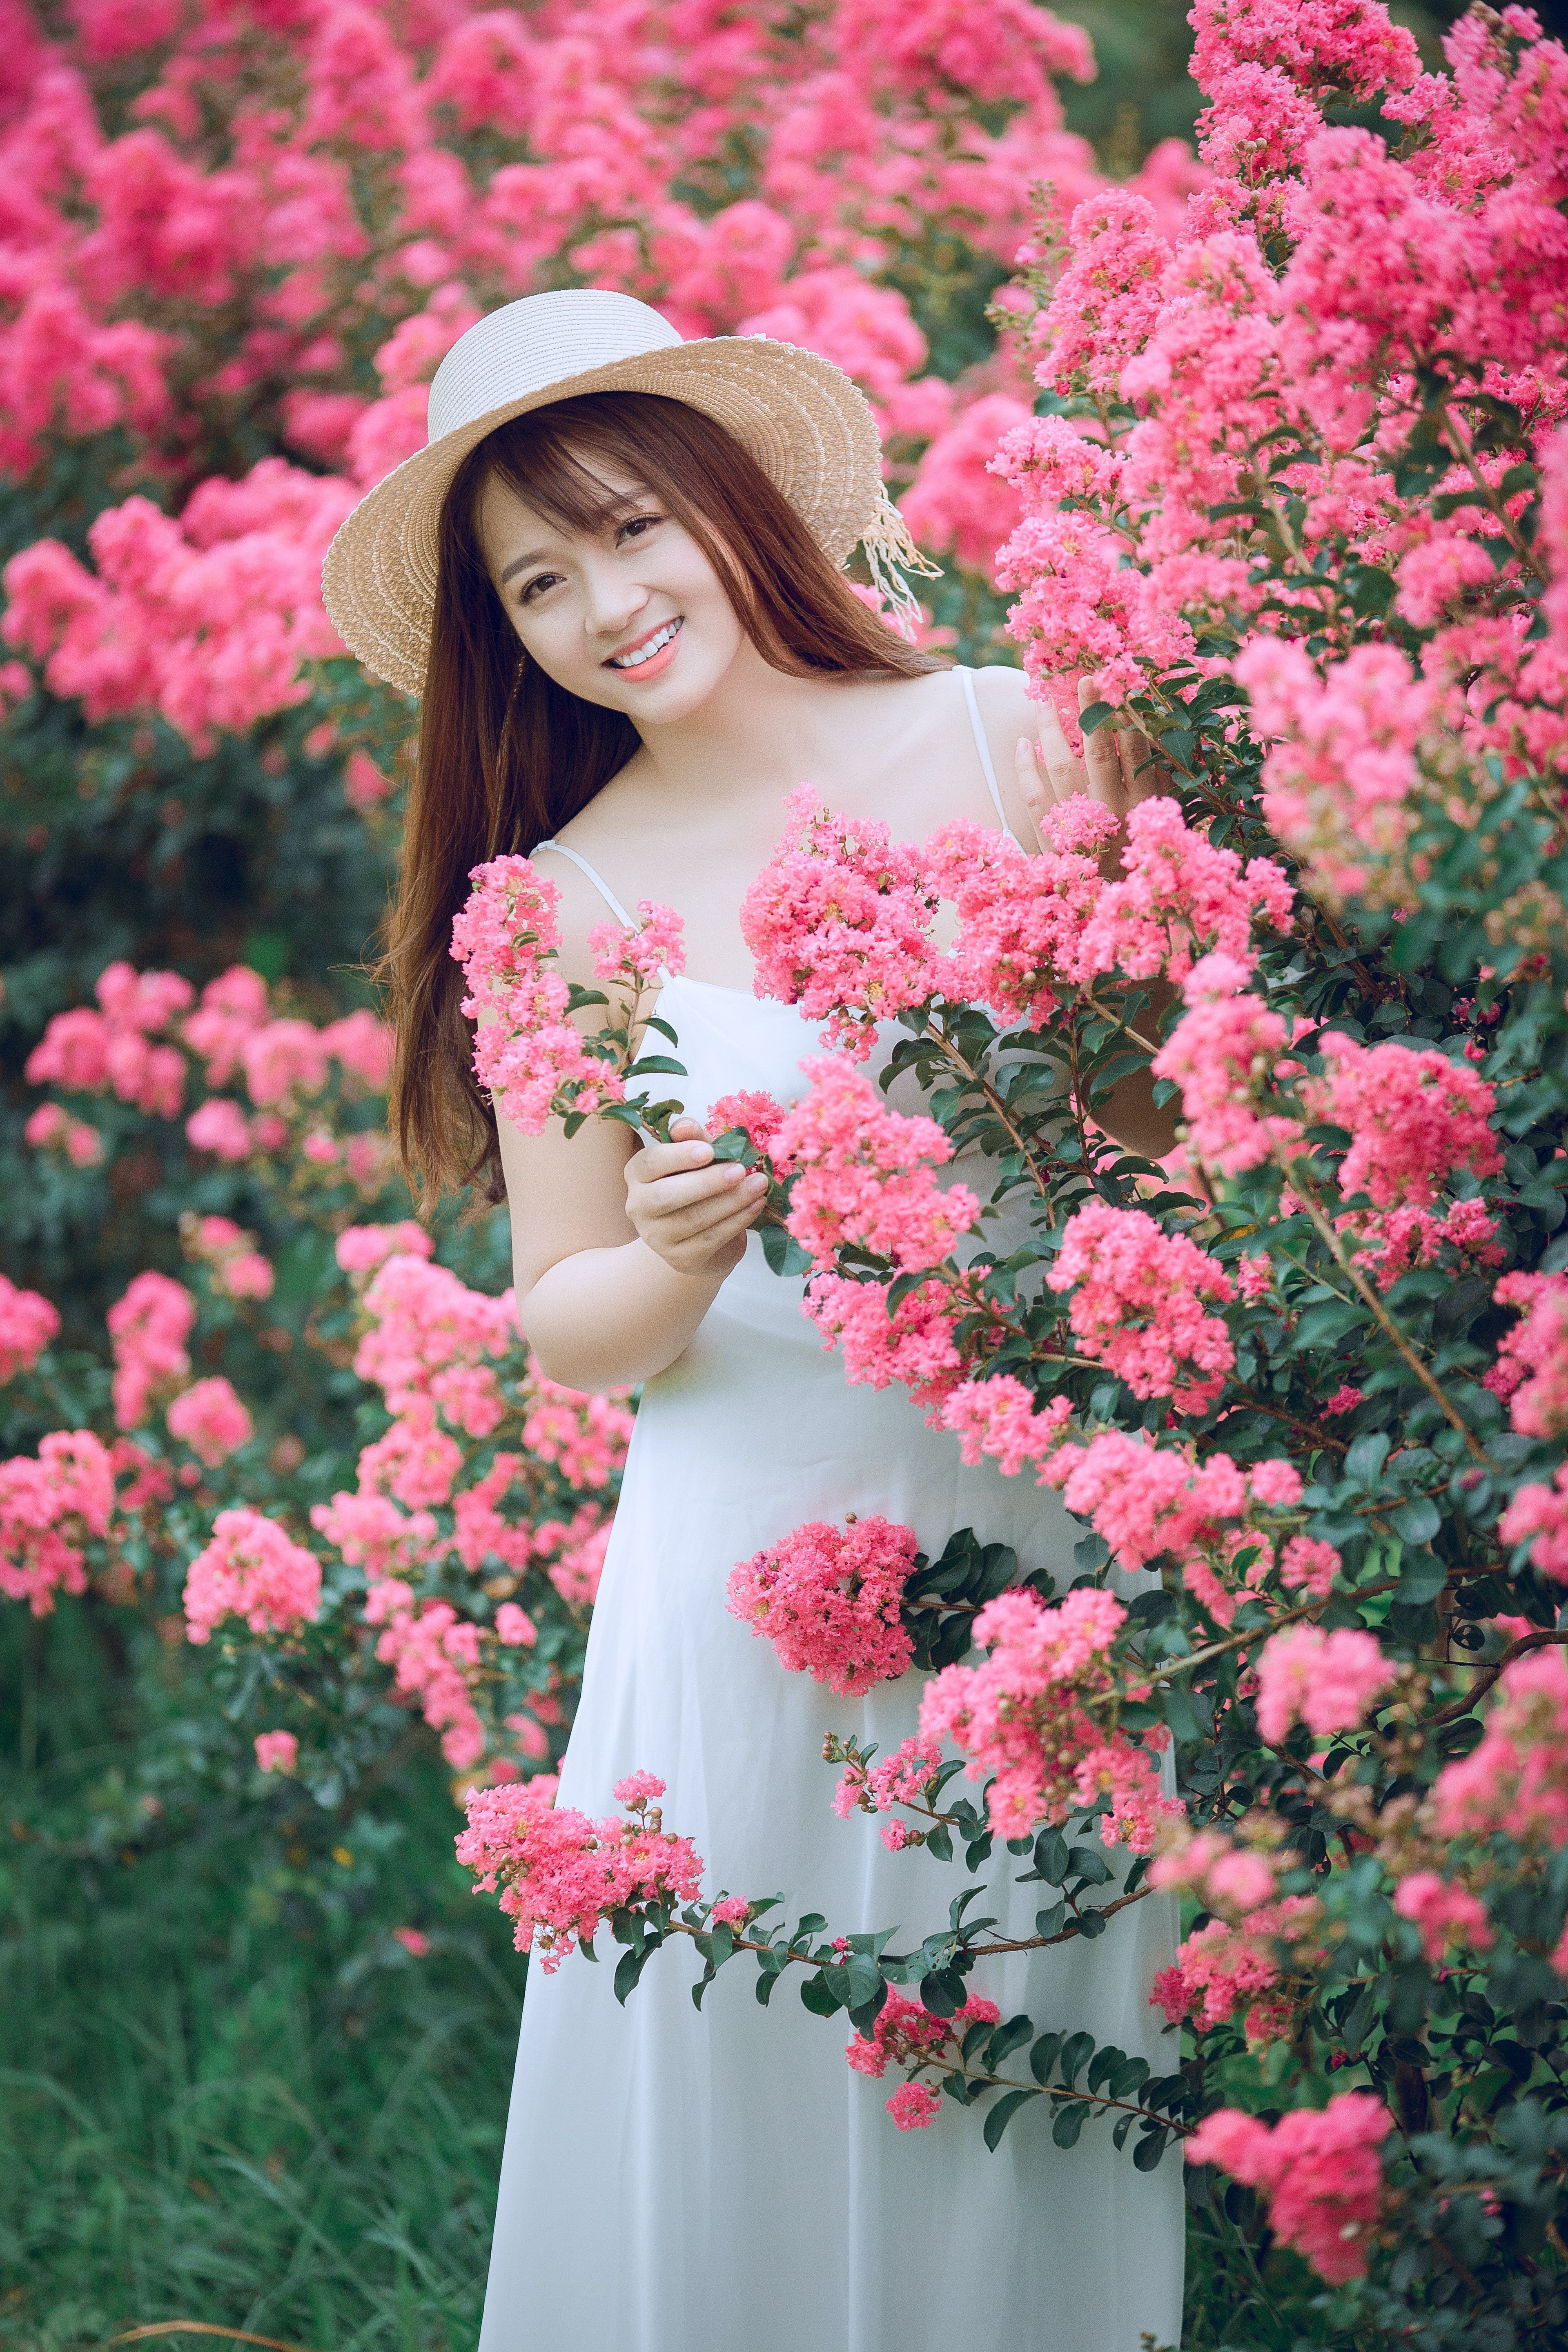 Woman Behind Pink Flowers · Free